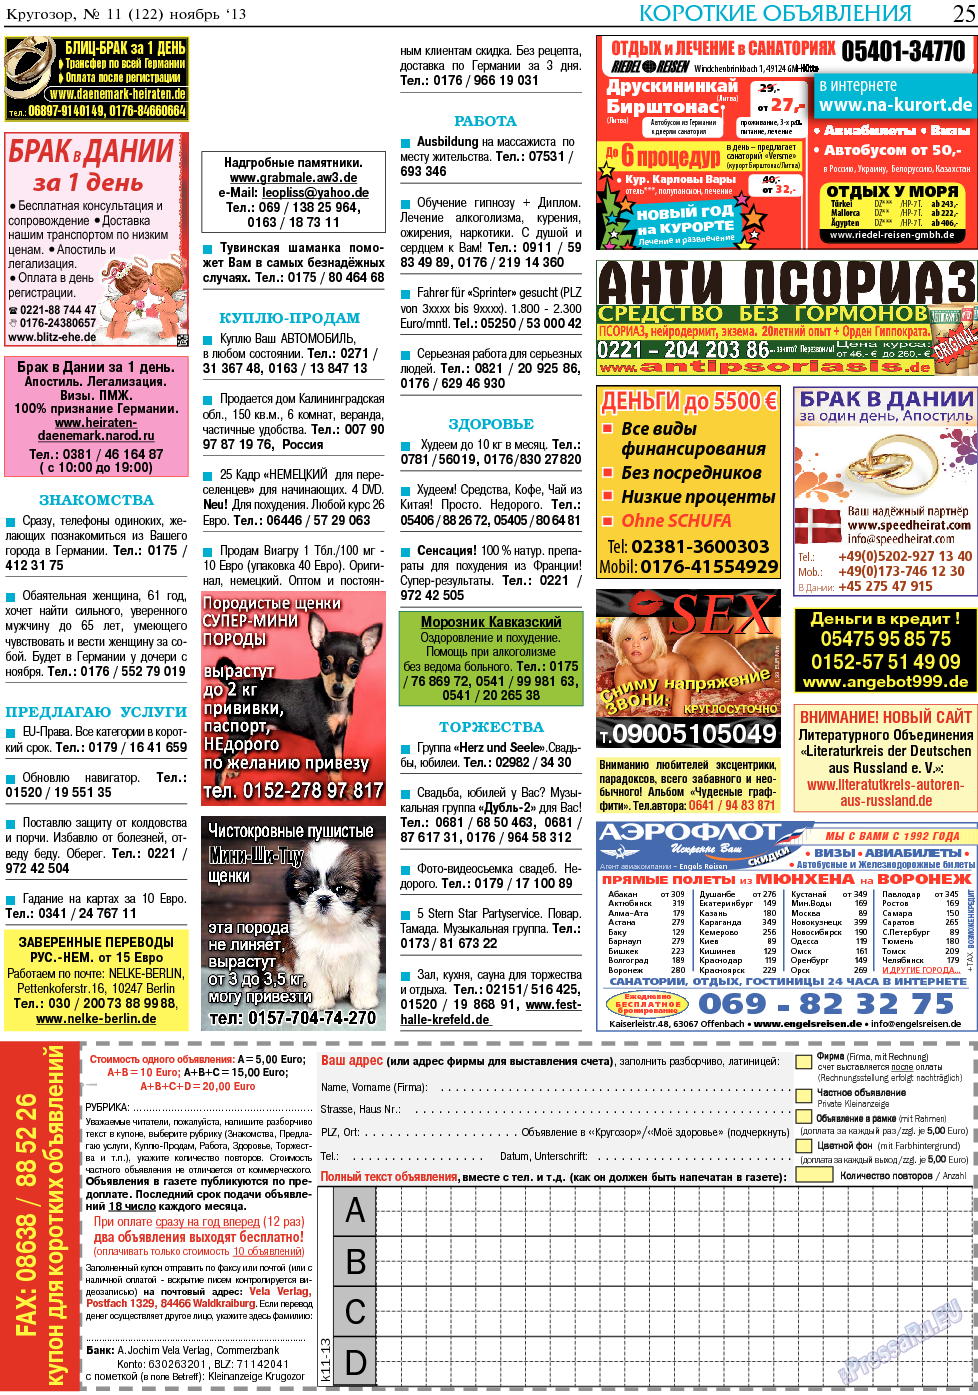 Кругозор (газета). 2013 год, номер 11, стр. 25